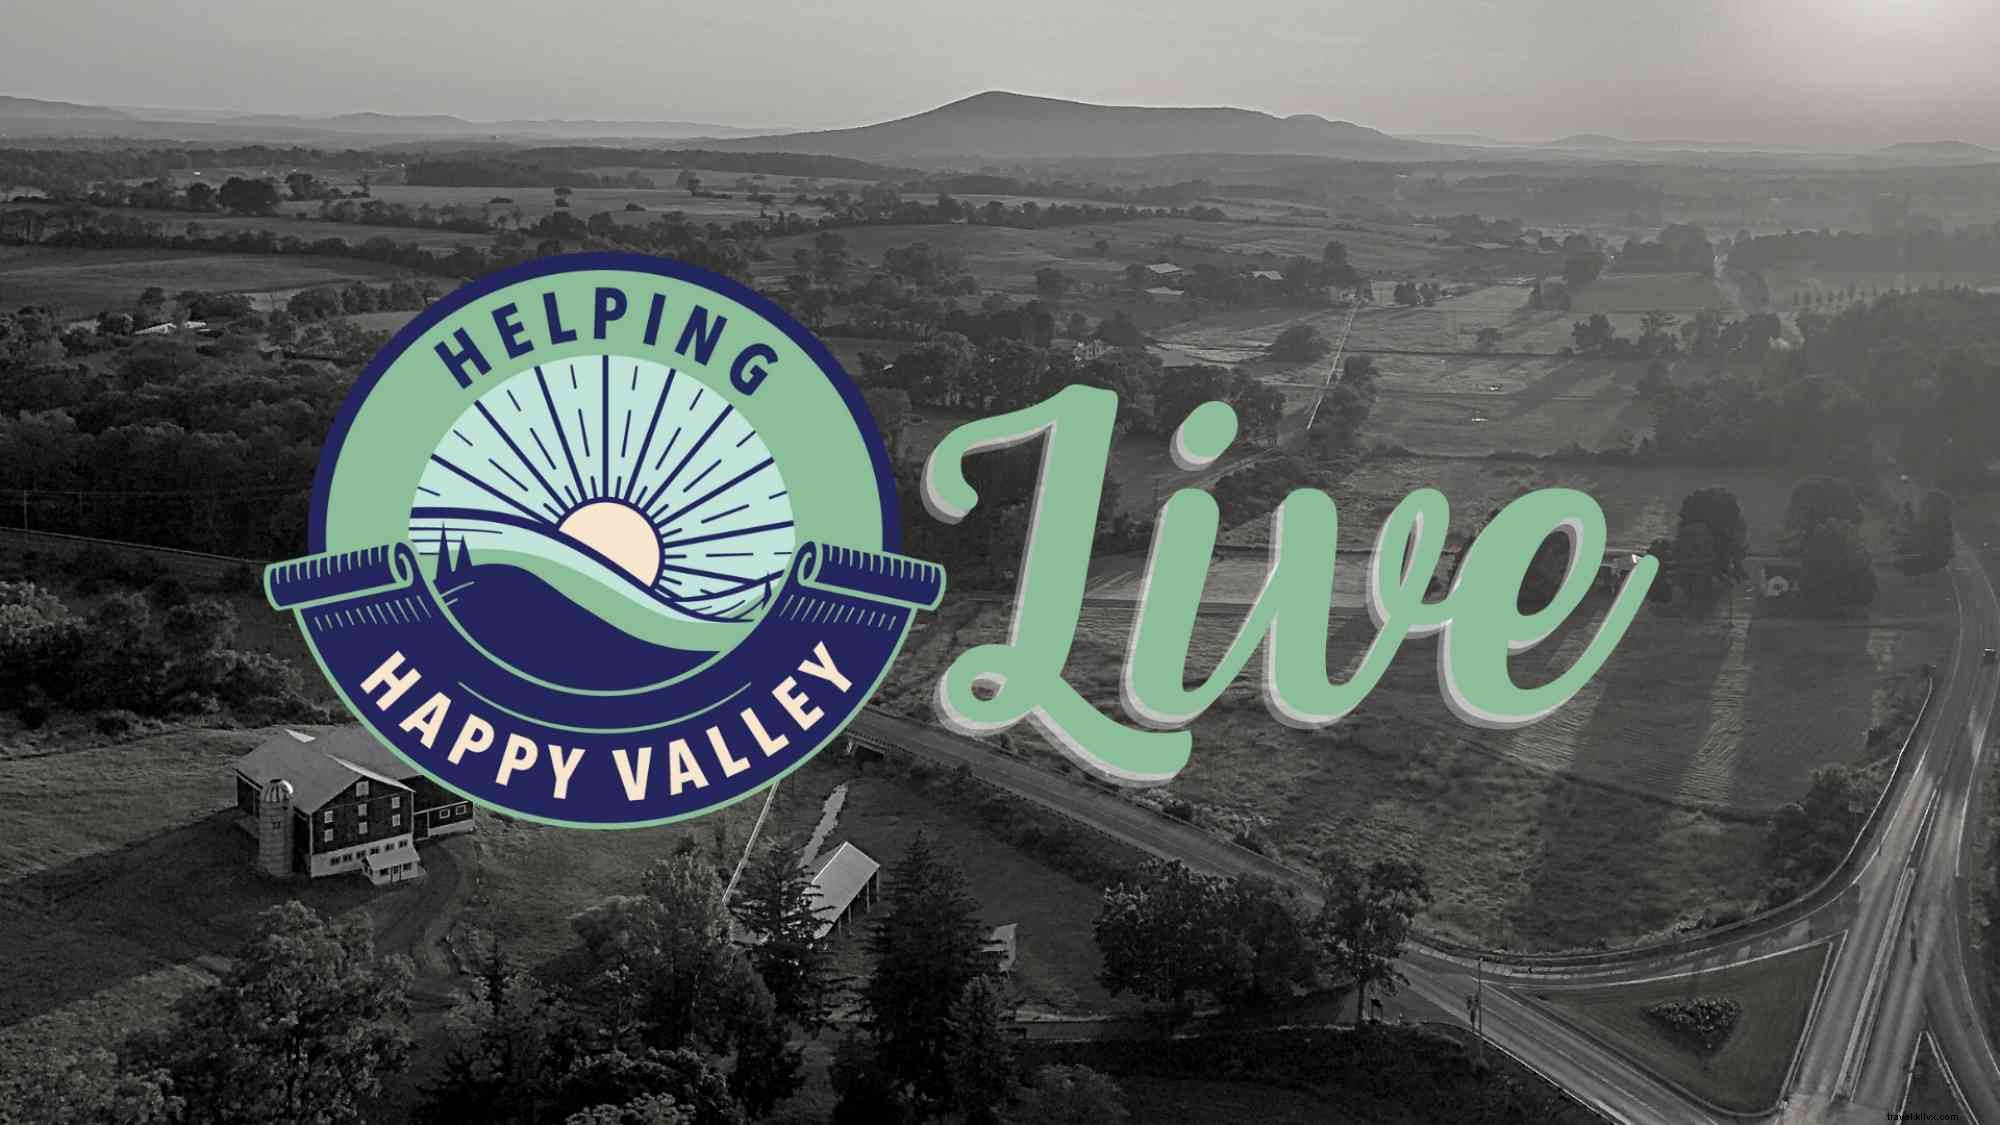 elping Happy Valley EN VIVO 